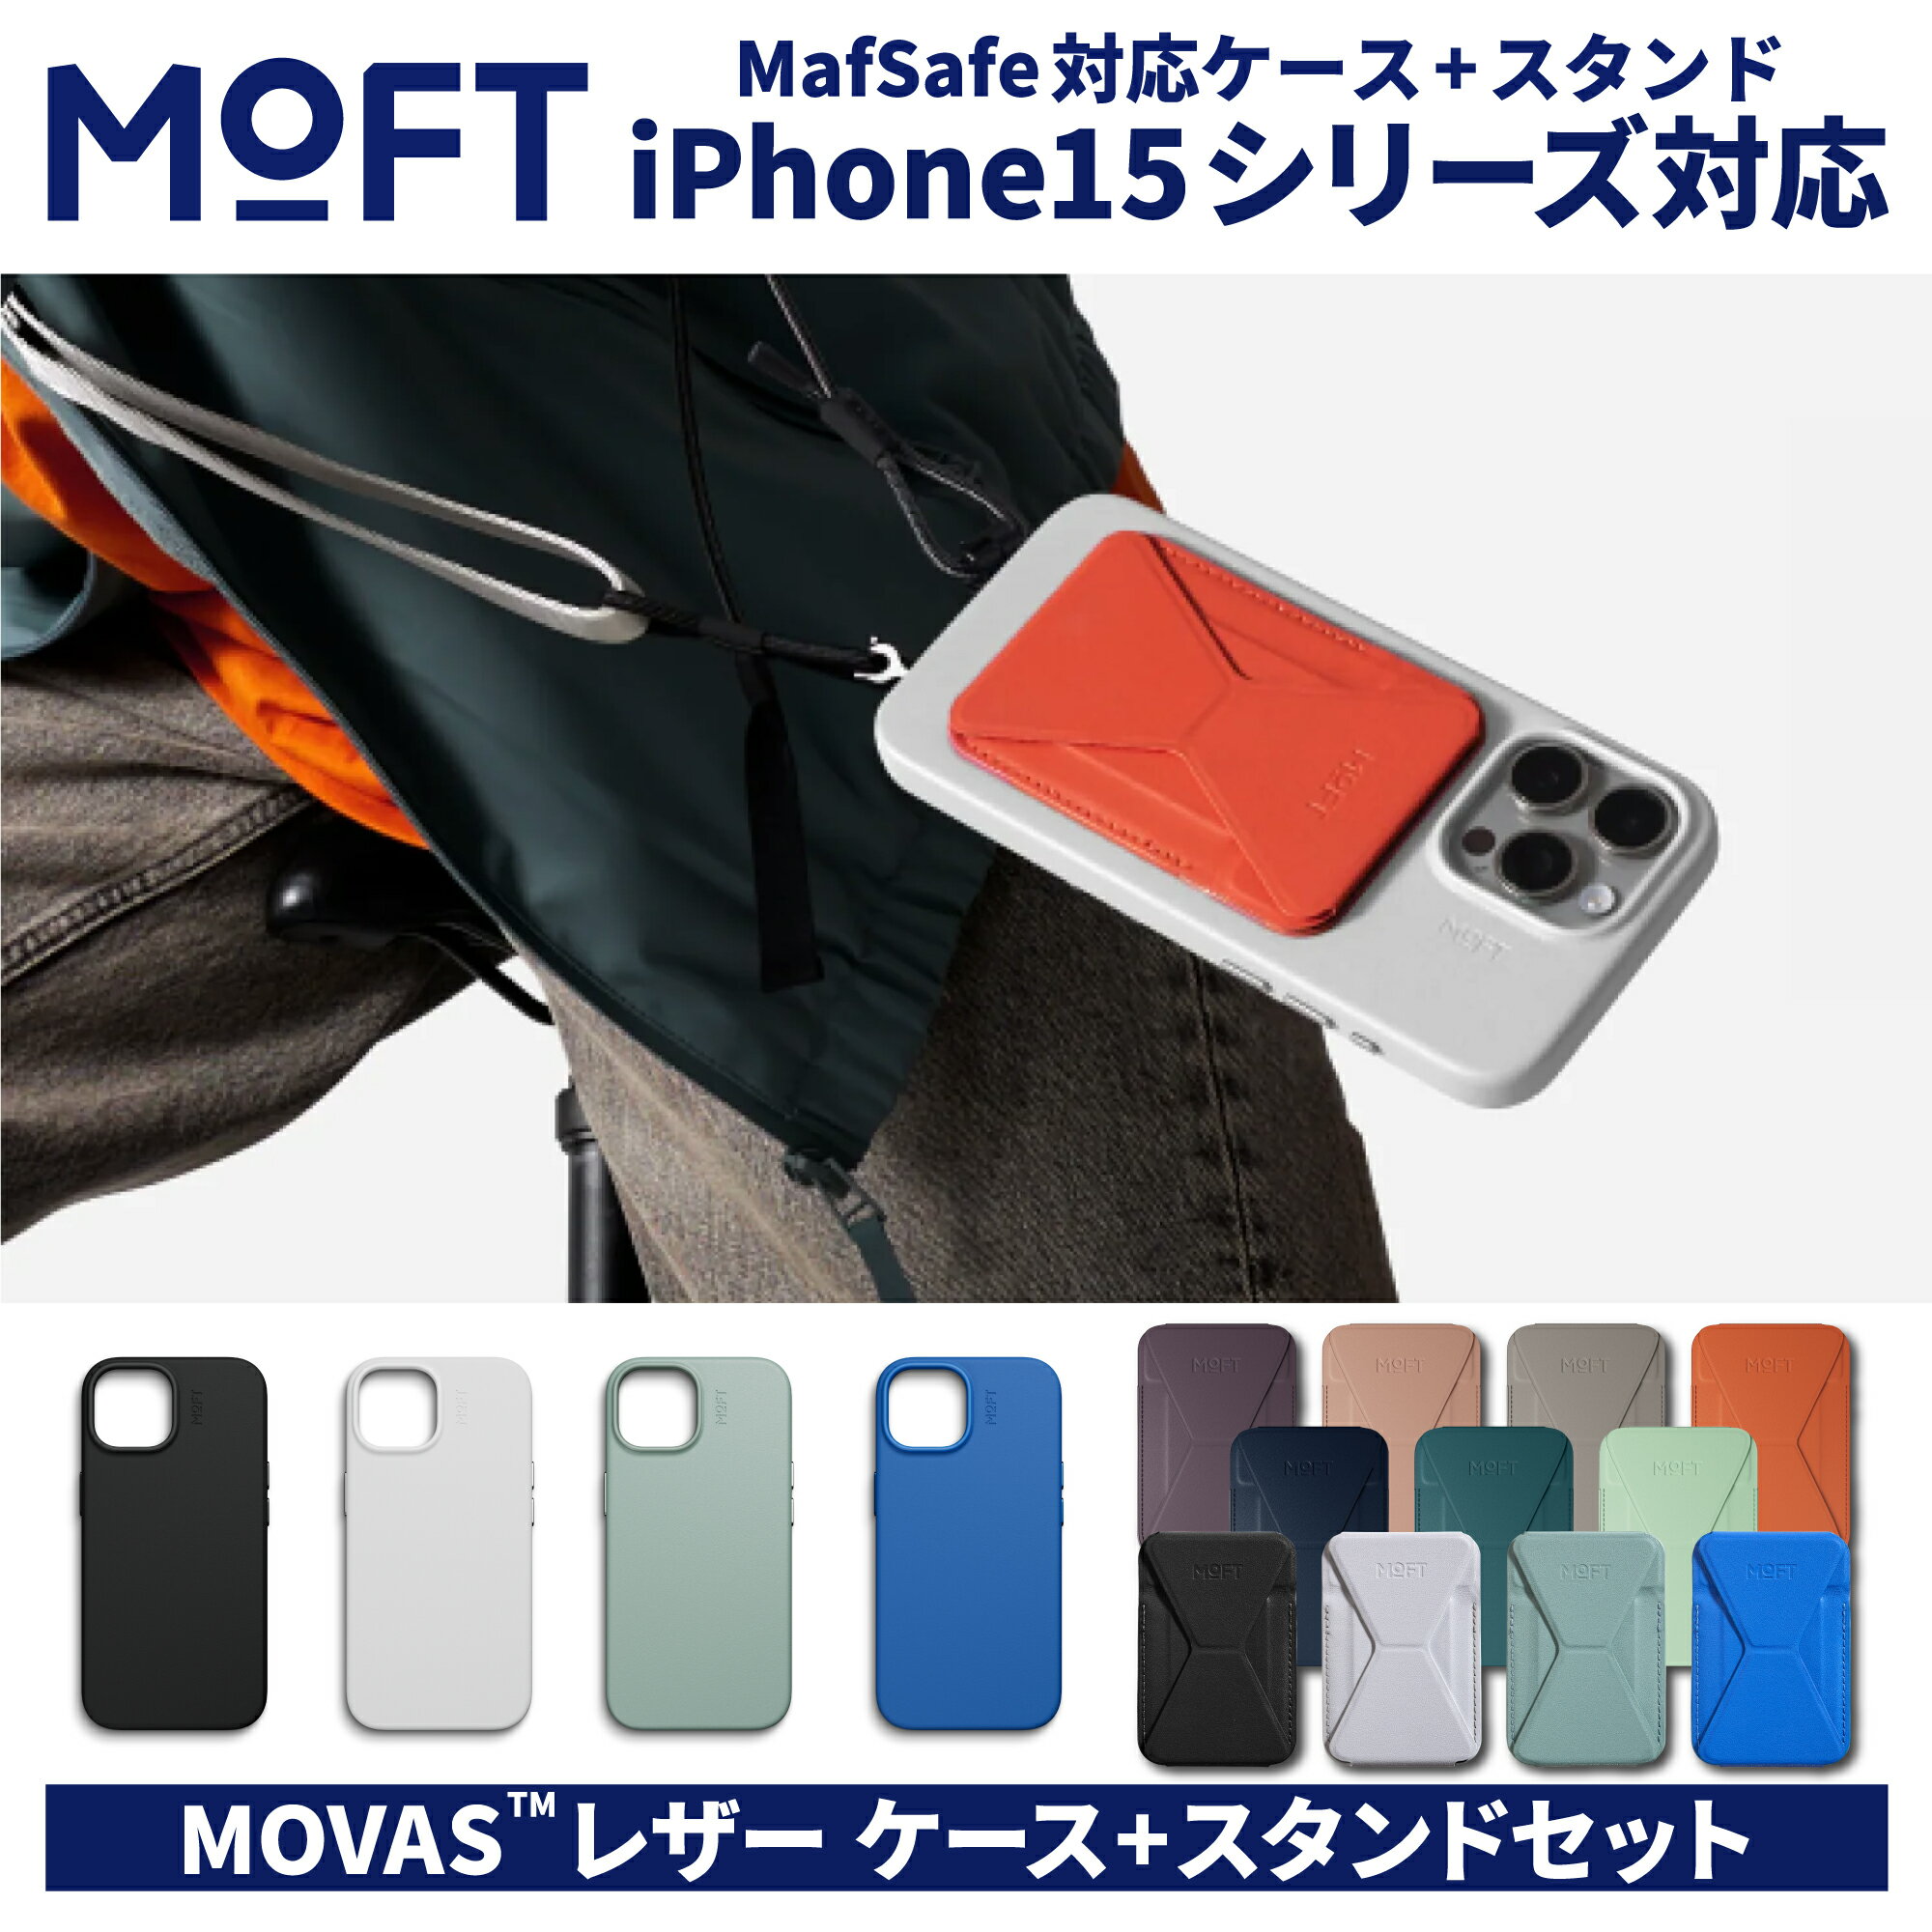 ケース+スタンドセット割 MOFT モフト iPhone12 iPhone13 iPhone14 iPhone15 MOVAS スマホケース ケース レザーケース ジェットブラック ミスティグレー スモークターコイズ サファイアブルー MagSafe 高い耐久性 ストラップ ストラップホルダー 2個付属